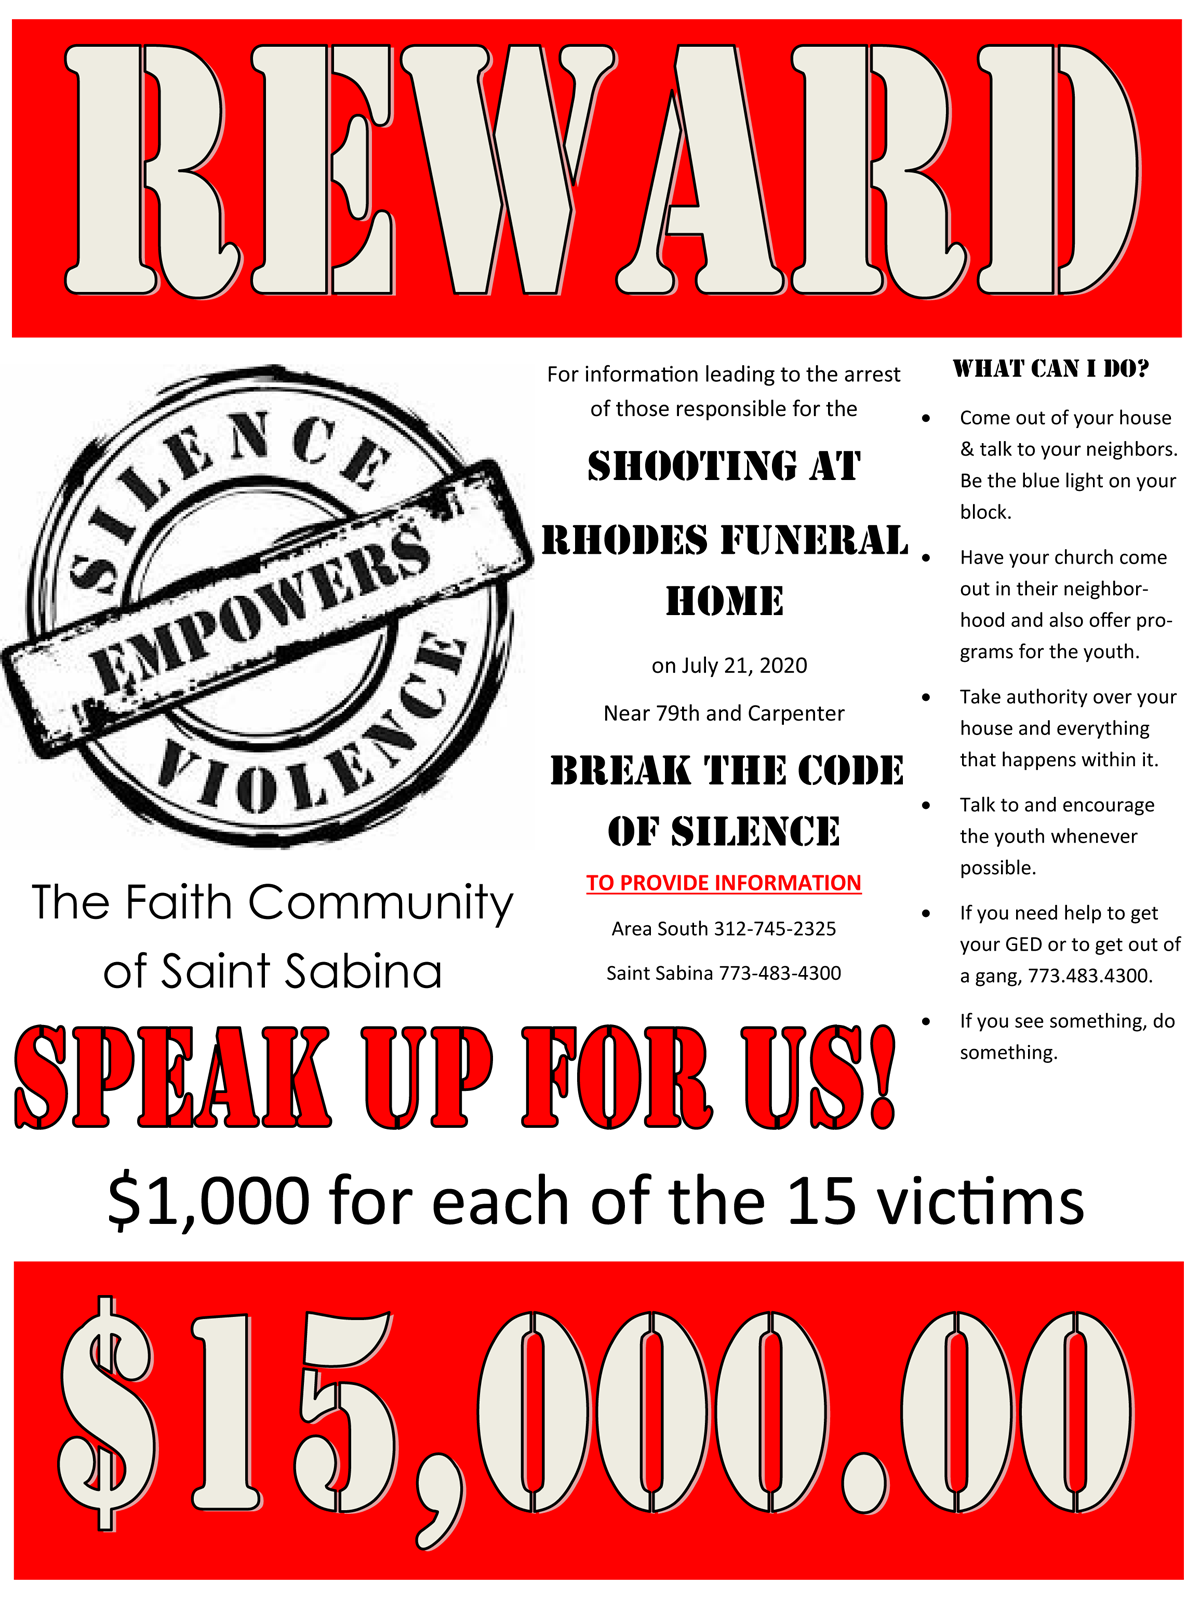 Reward - Rhodes Funeral Home - $15, 000